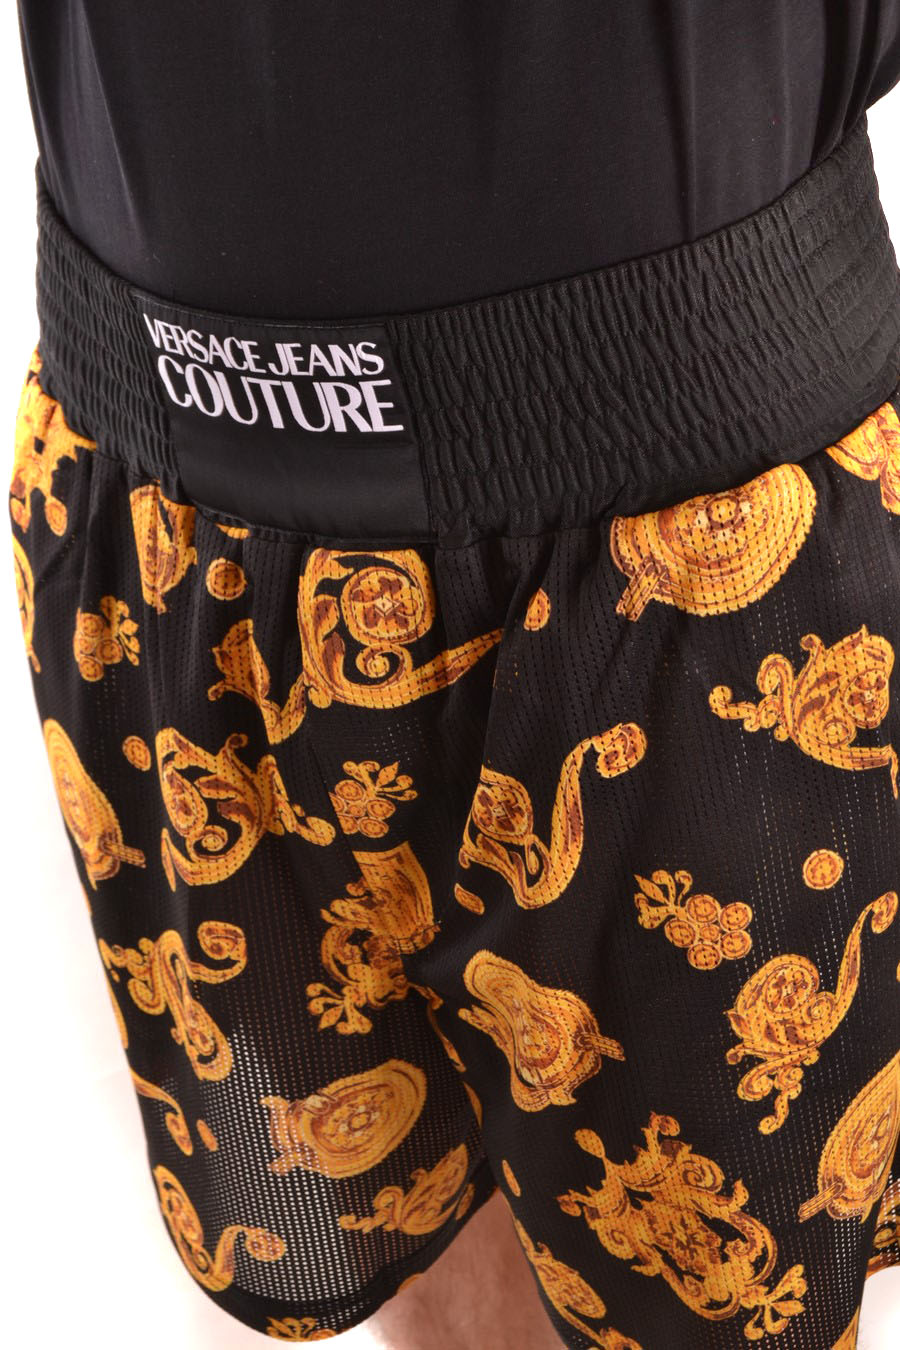 VERSACE JEANS COUTURE Trousers | ViganoBoutique.com